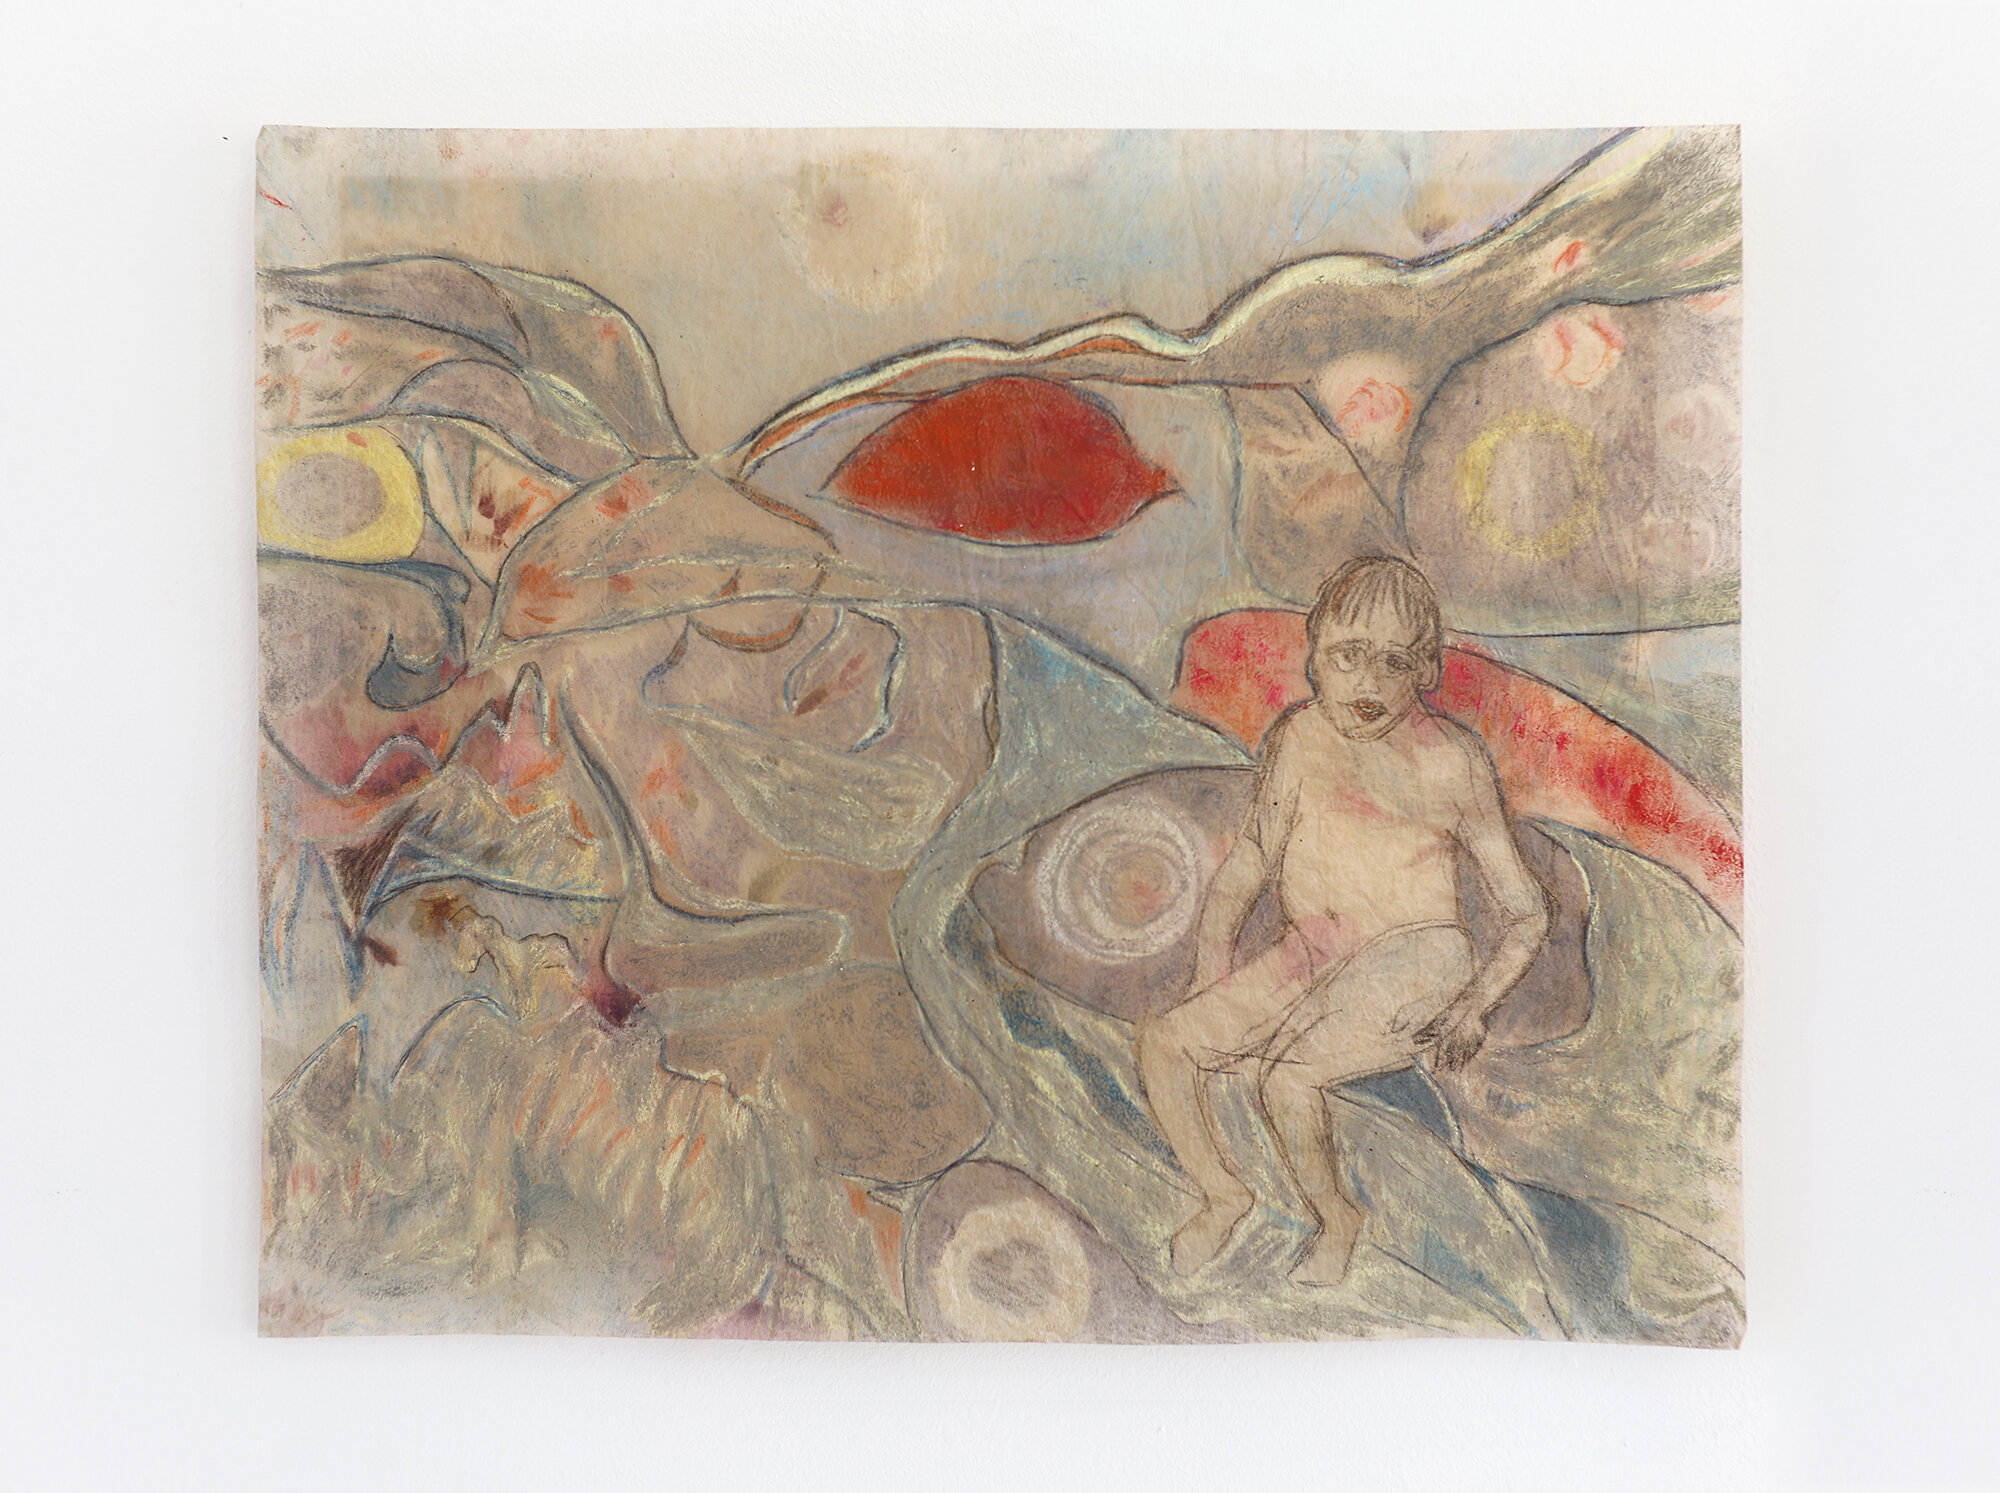   “Enfant dans les rochers”, (« Child in boulders ») , 2013, oil pastel and pencil on found paper, 39x31,5cm 